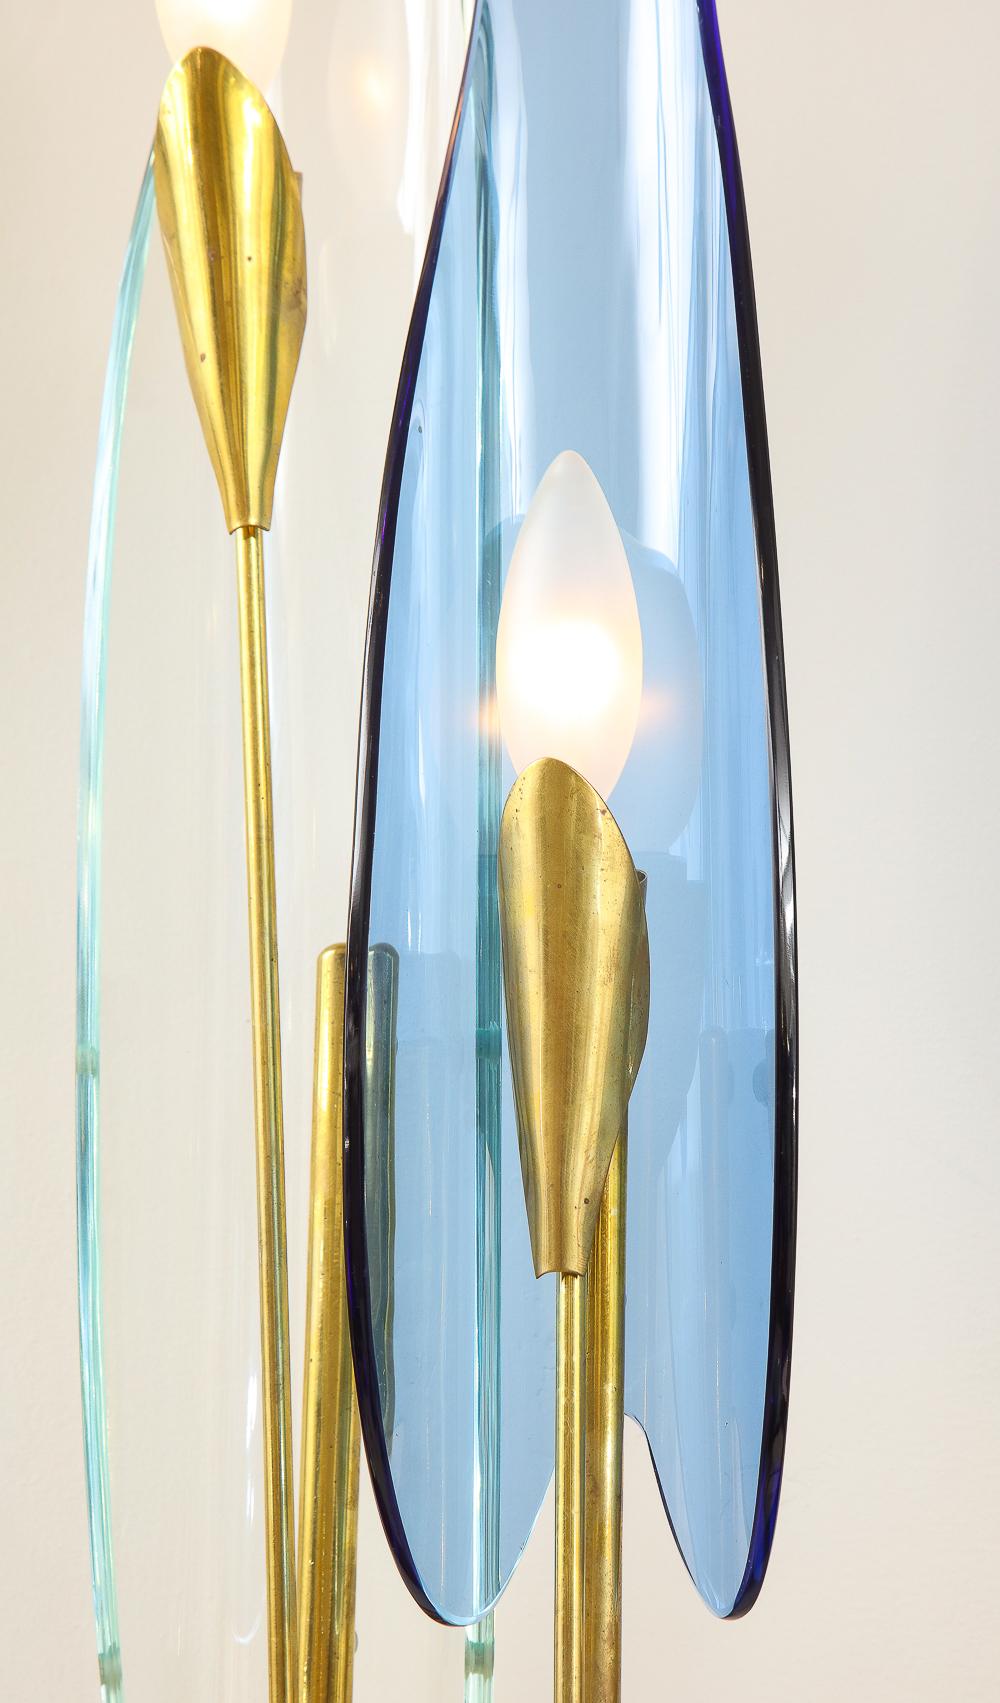 Messing, Glas. Skulpturale Strukturen mit abwechselnd klaren und blauen 